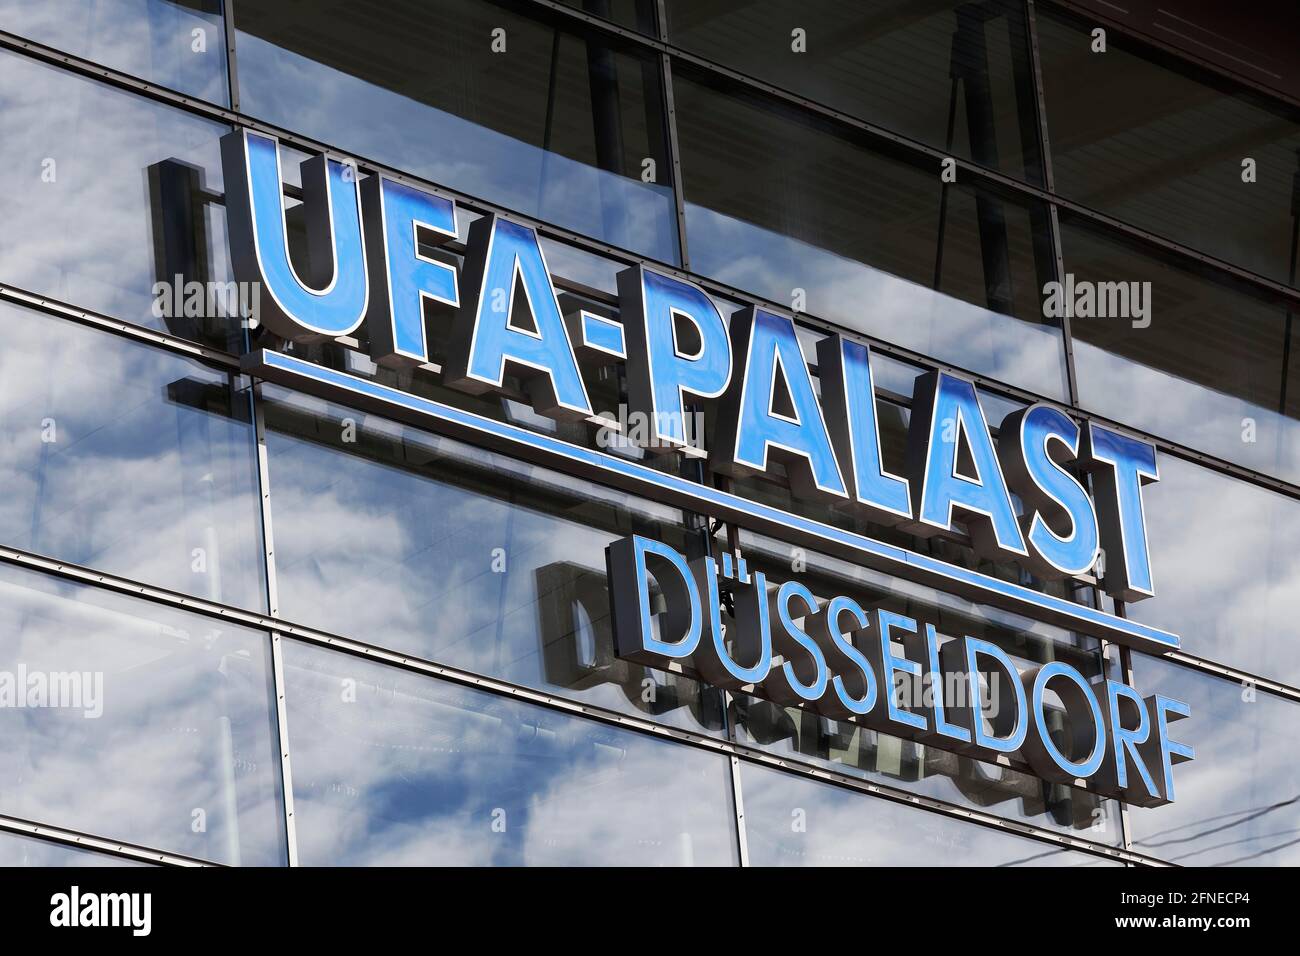 Ufa-Palast Duesseldorf, lettering on the building, multiplex cinema, North Rhine-Westphalia, Germany Stock Photo